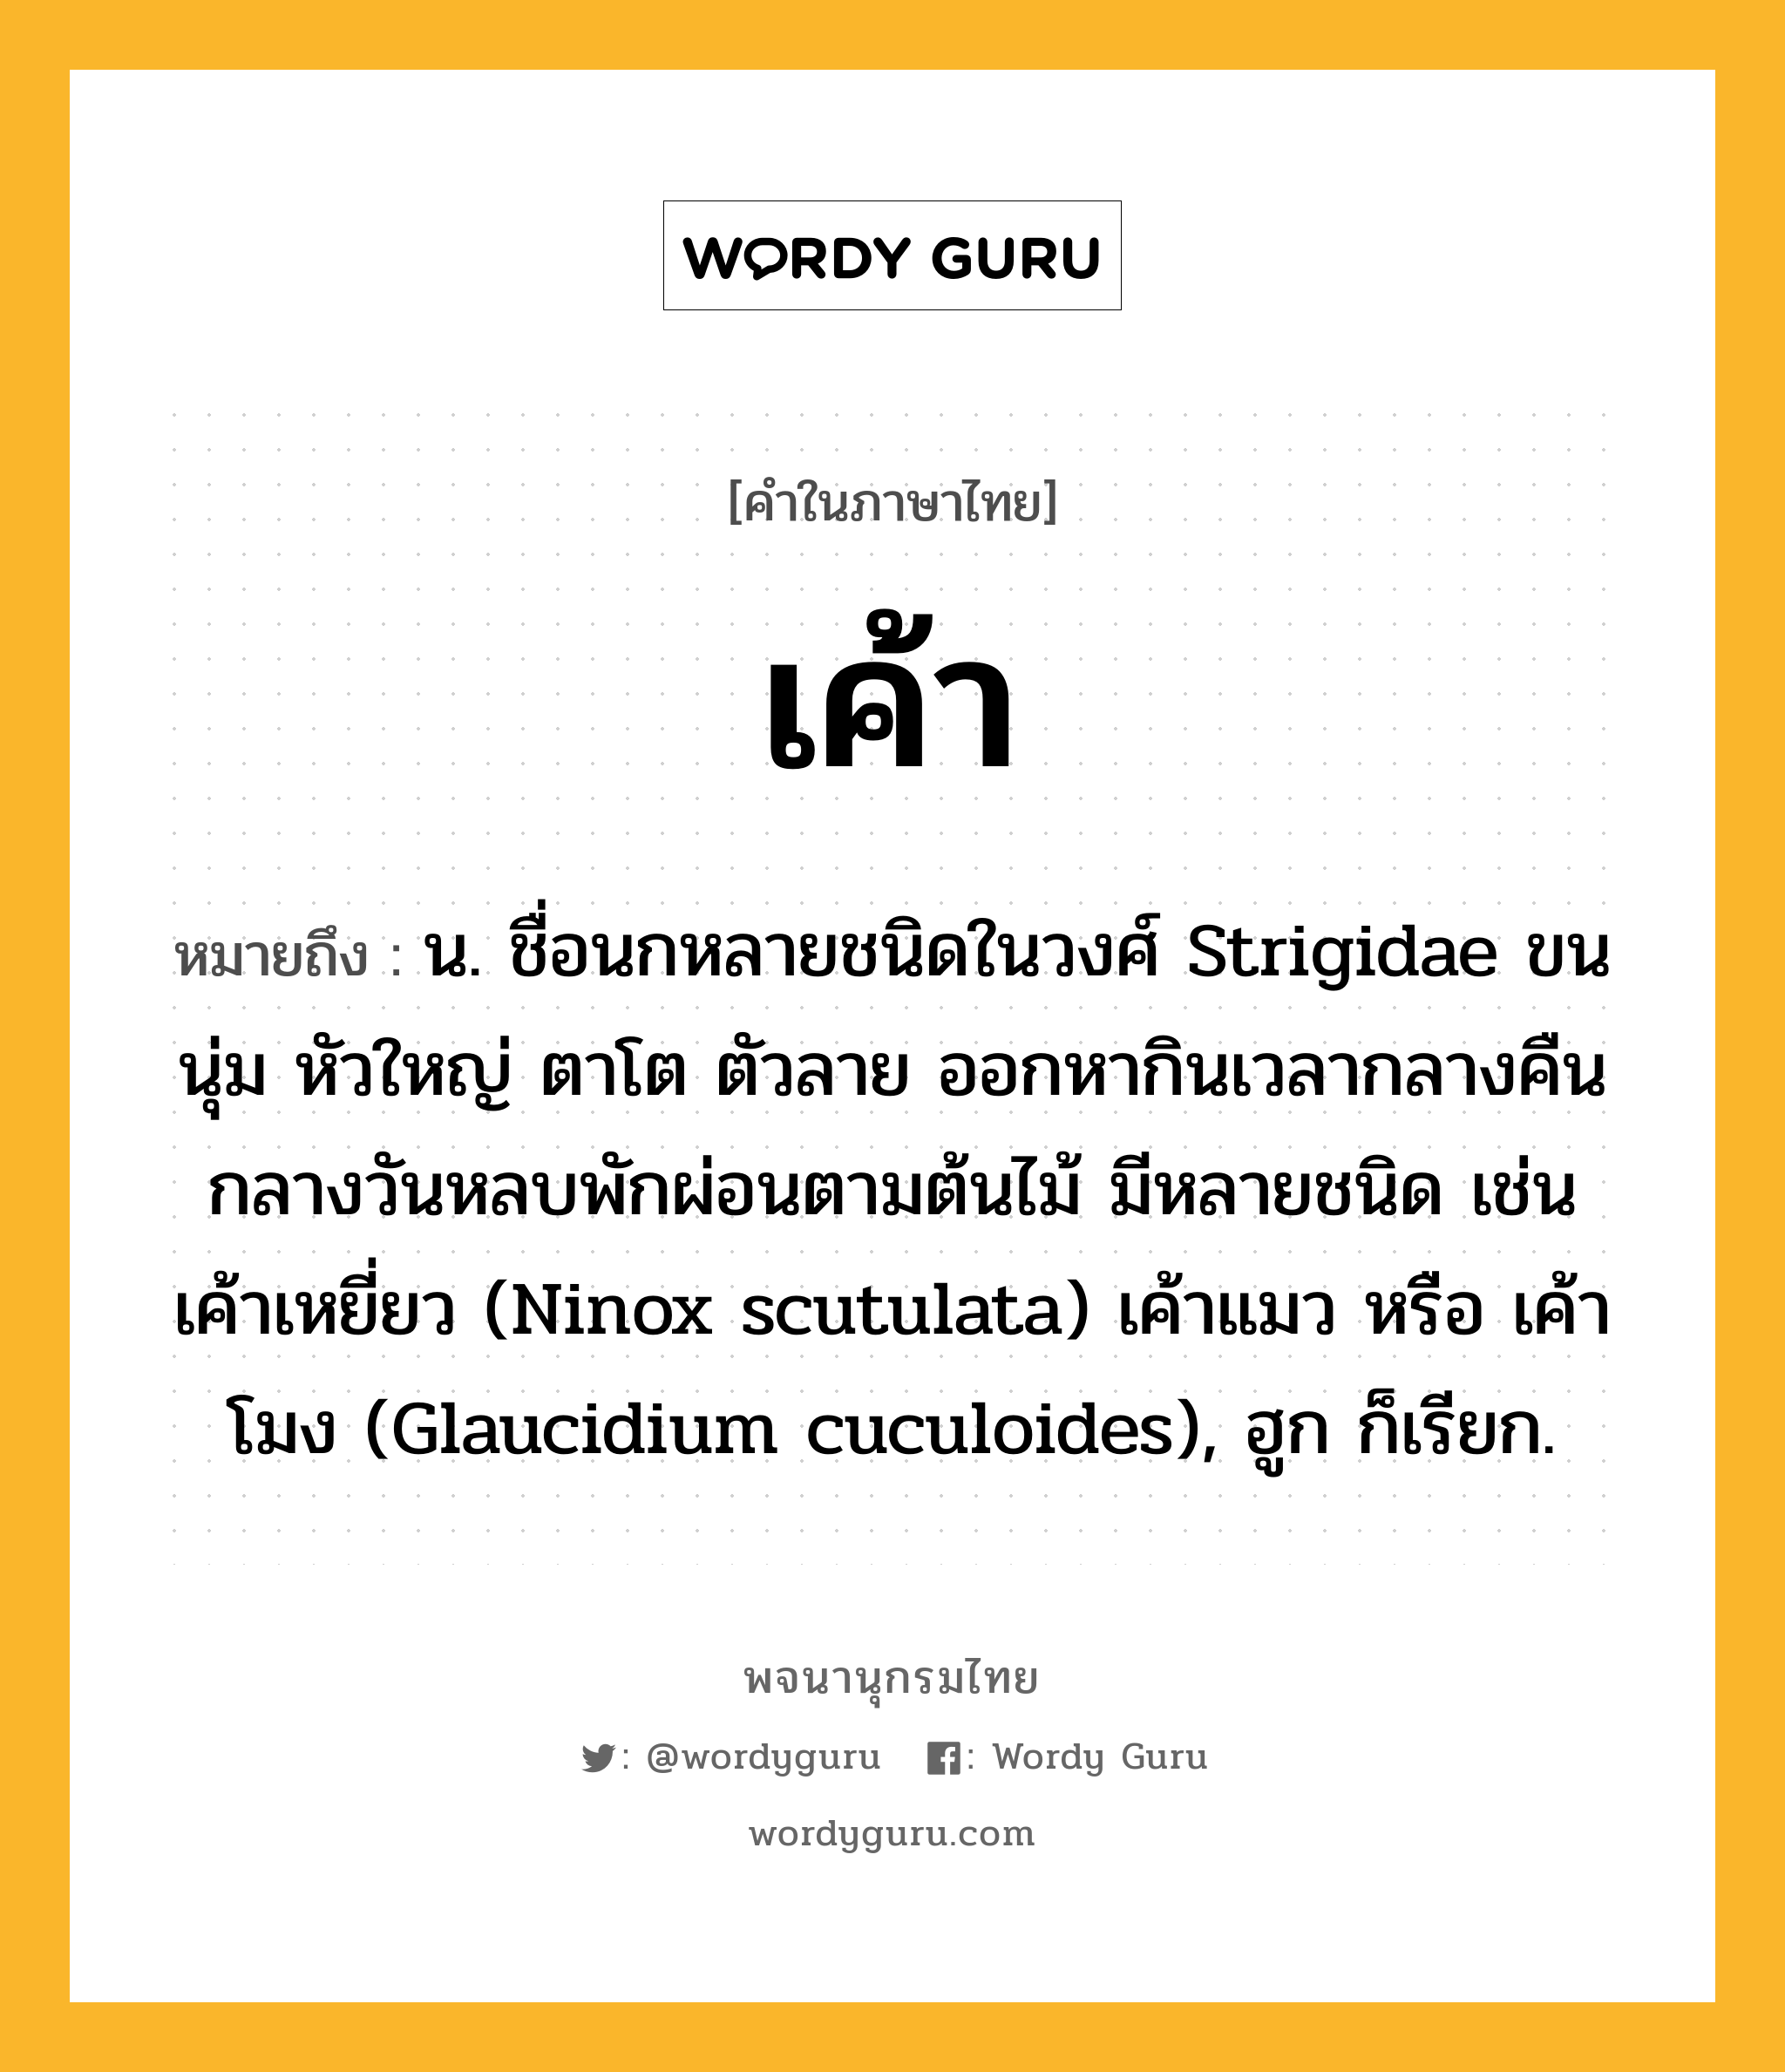 เค้า ความหมาย หมายถึงอะไร?, คำในภาษาไทย เค้า หมายถึง น. ชื่อนกหลายชนิดในวงศ์ Strigidae ขนนุ่ม หัวใหญ่ ตาโต ตัวลาย ออกหากินเวลากลางคืน กลางวันหลบพักผ่อนตามต้นไม้ มีหลายชนิด เช่น เค้าเหยี่ยว (Ninox scutulata) เค้าแมว หรือ เค้าโมง (Glaucidium cuculoides), ฮูก ก็เรียก.